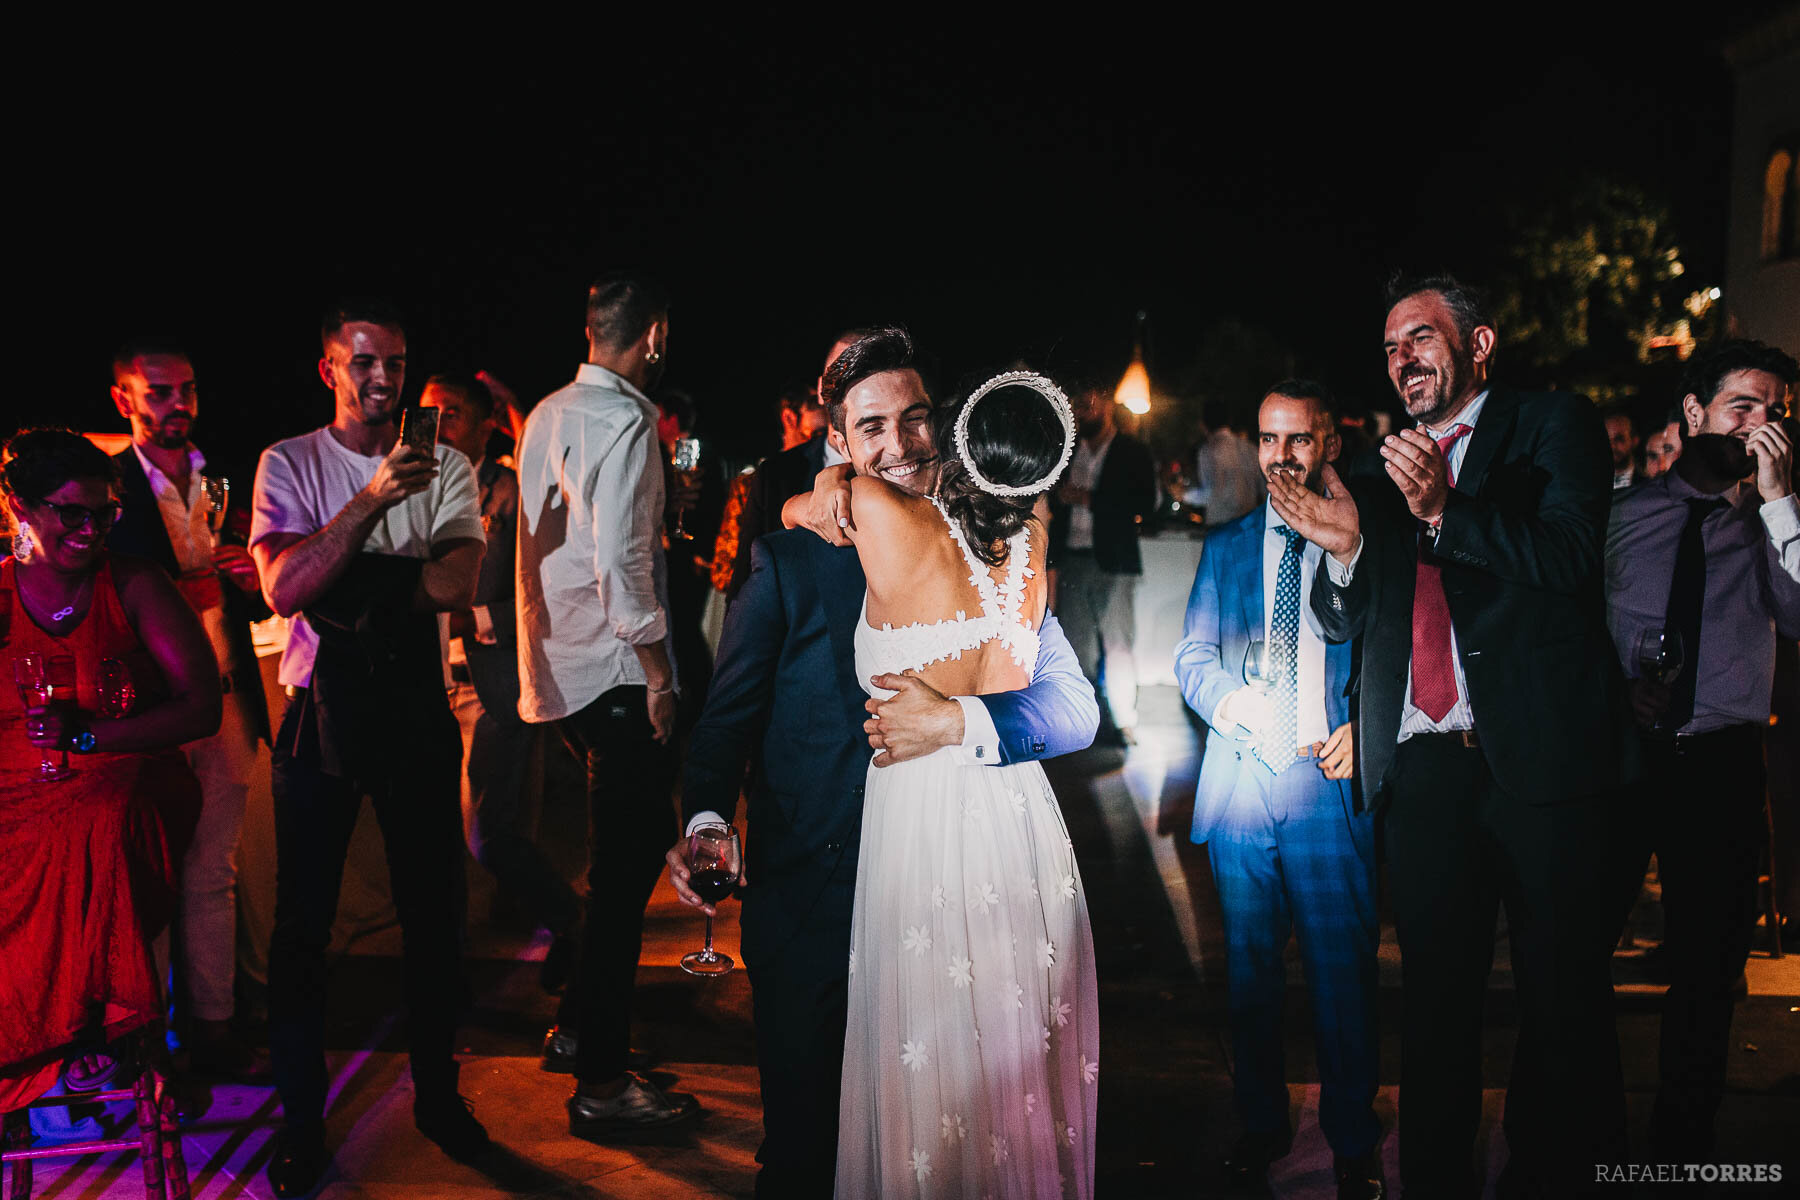 photo-principe-cortegana-rafael-torres-wedding-boda-fotografia-catering-campuzano-100.jpg